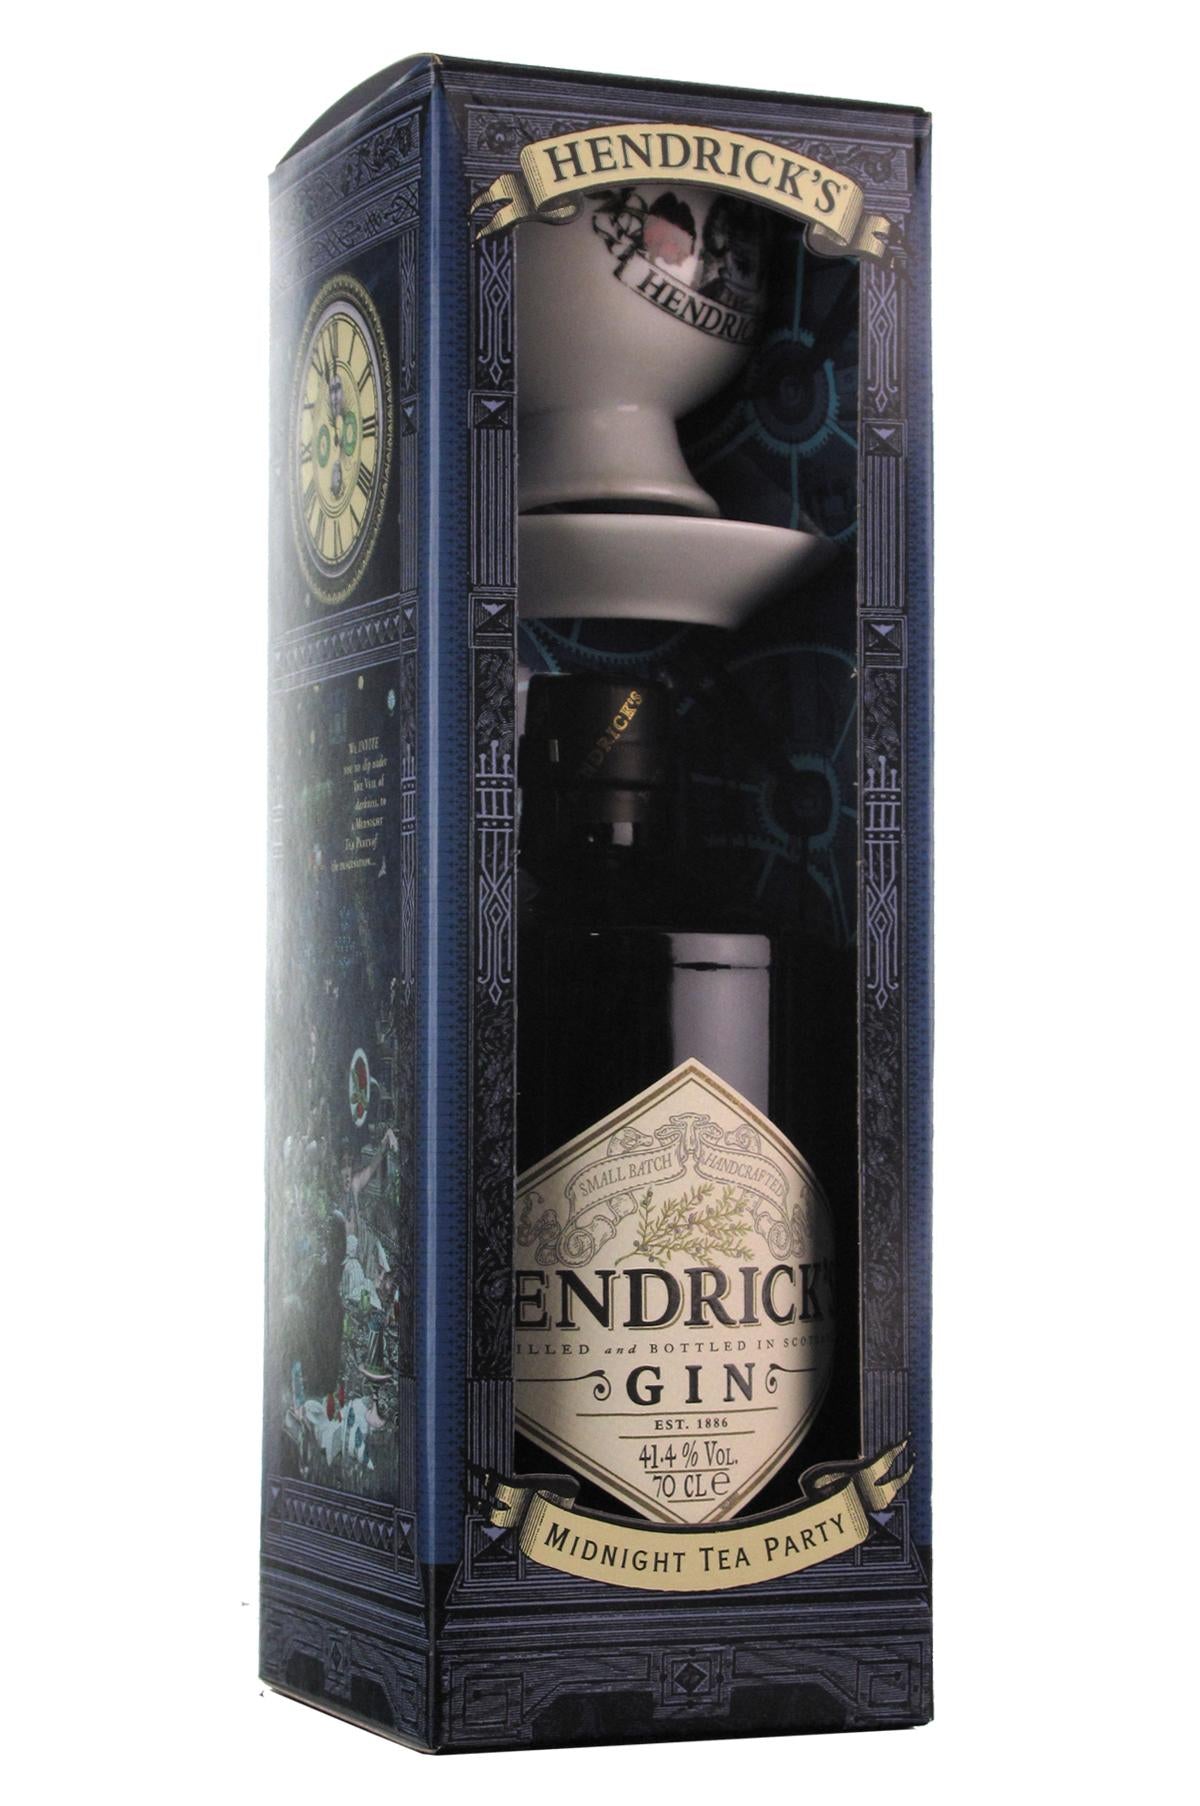 Hendrick's Premium Gin Midnight Tea Party